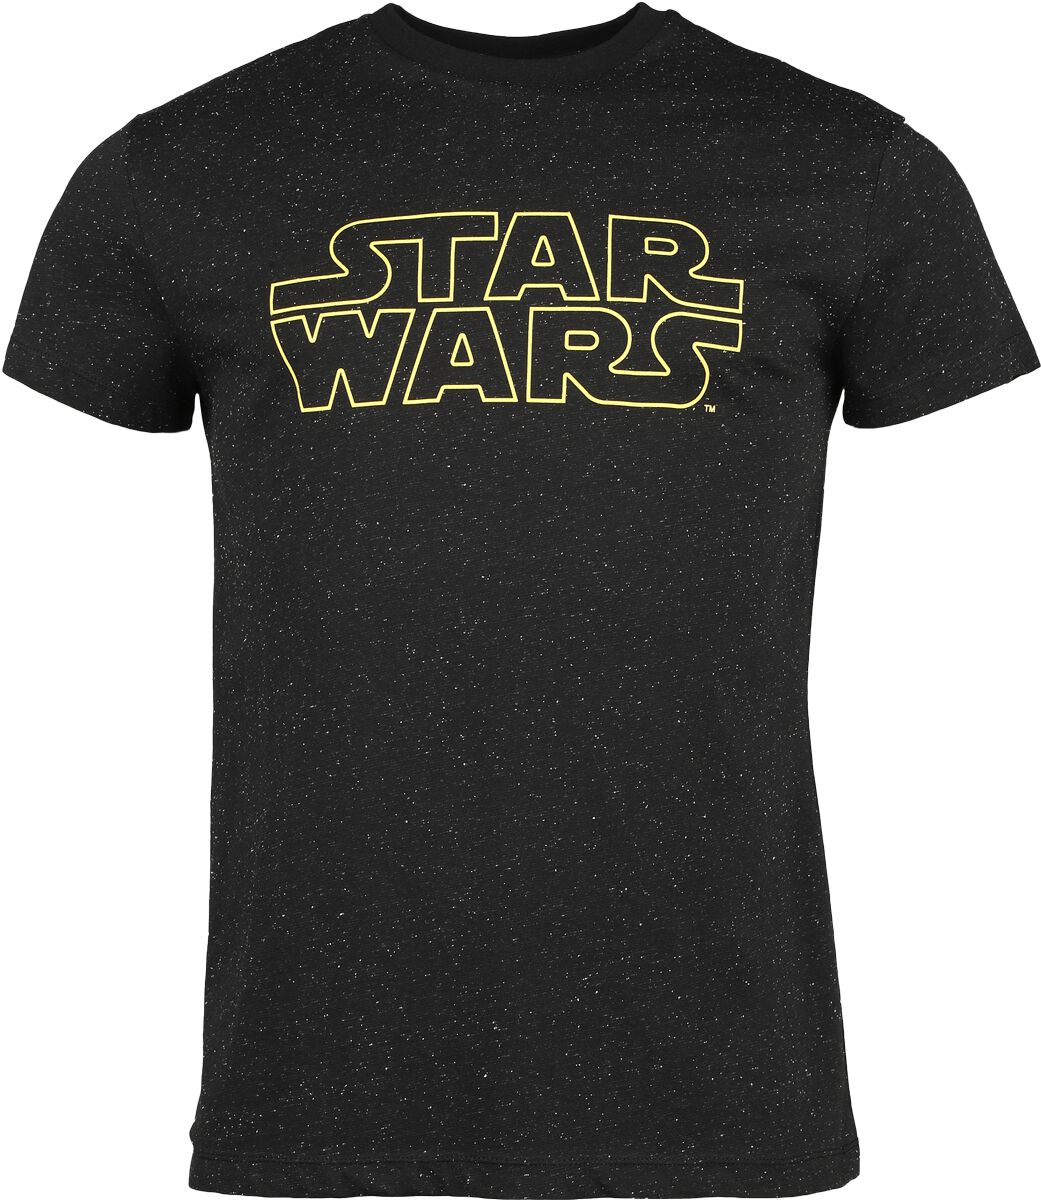 Star Wars T-Shirt - Star Wars - Galaxy - S bis 3XL - für Männer - Größe L - schwarz  - EMP exklusives Merchandise! von Star Wars